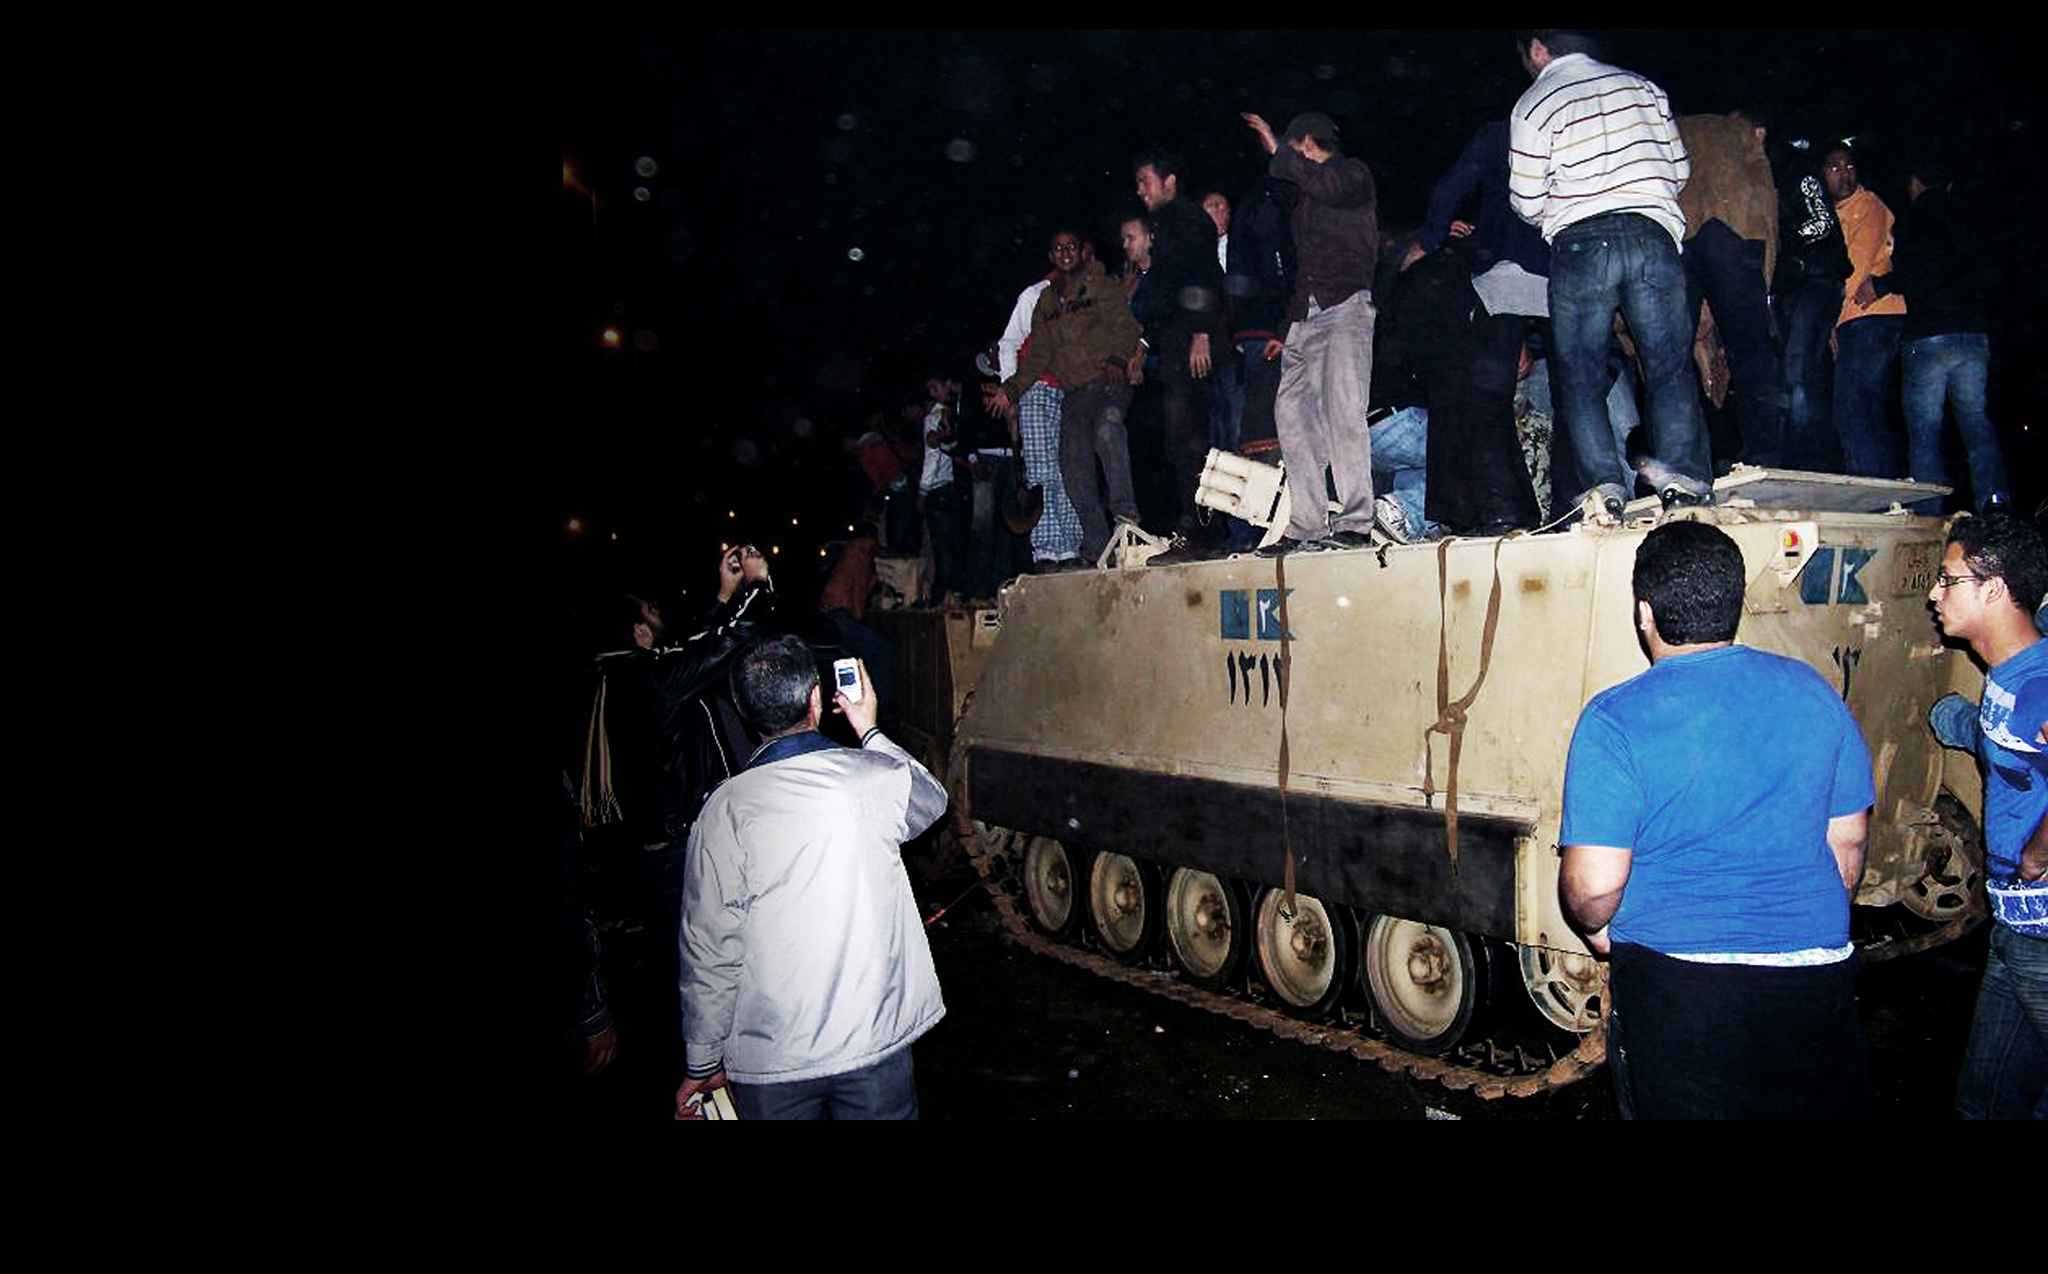 بدأ المتظاهرون بالسيطرة على بعض الآليات العسكرية في 28 يناير/كانون الثاني 2011.<br>

 (الصورة لعادل قسطل)
